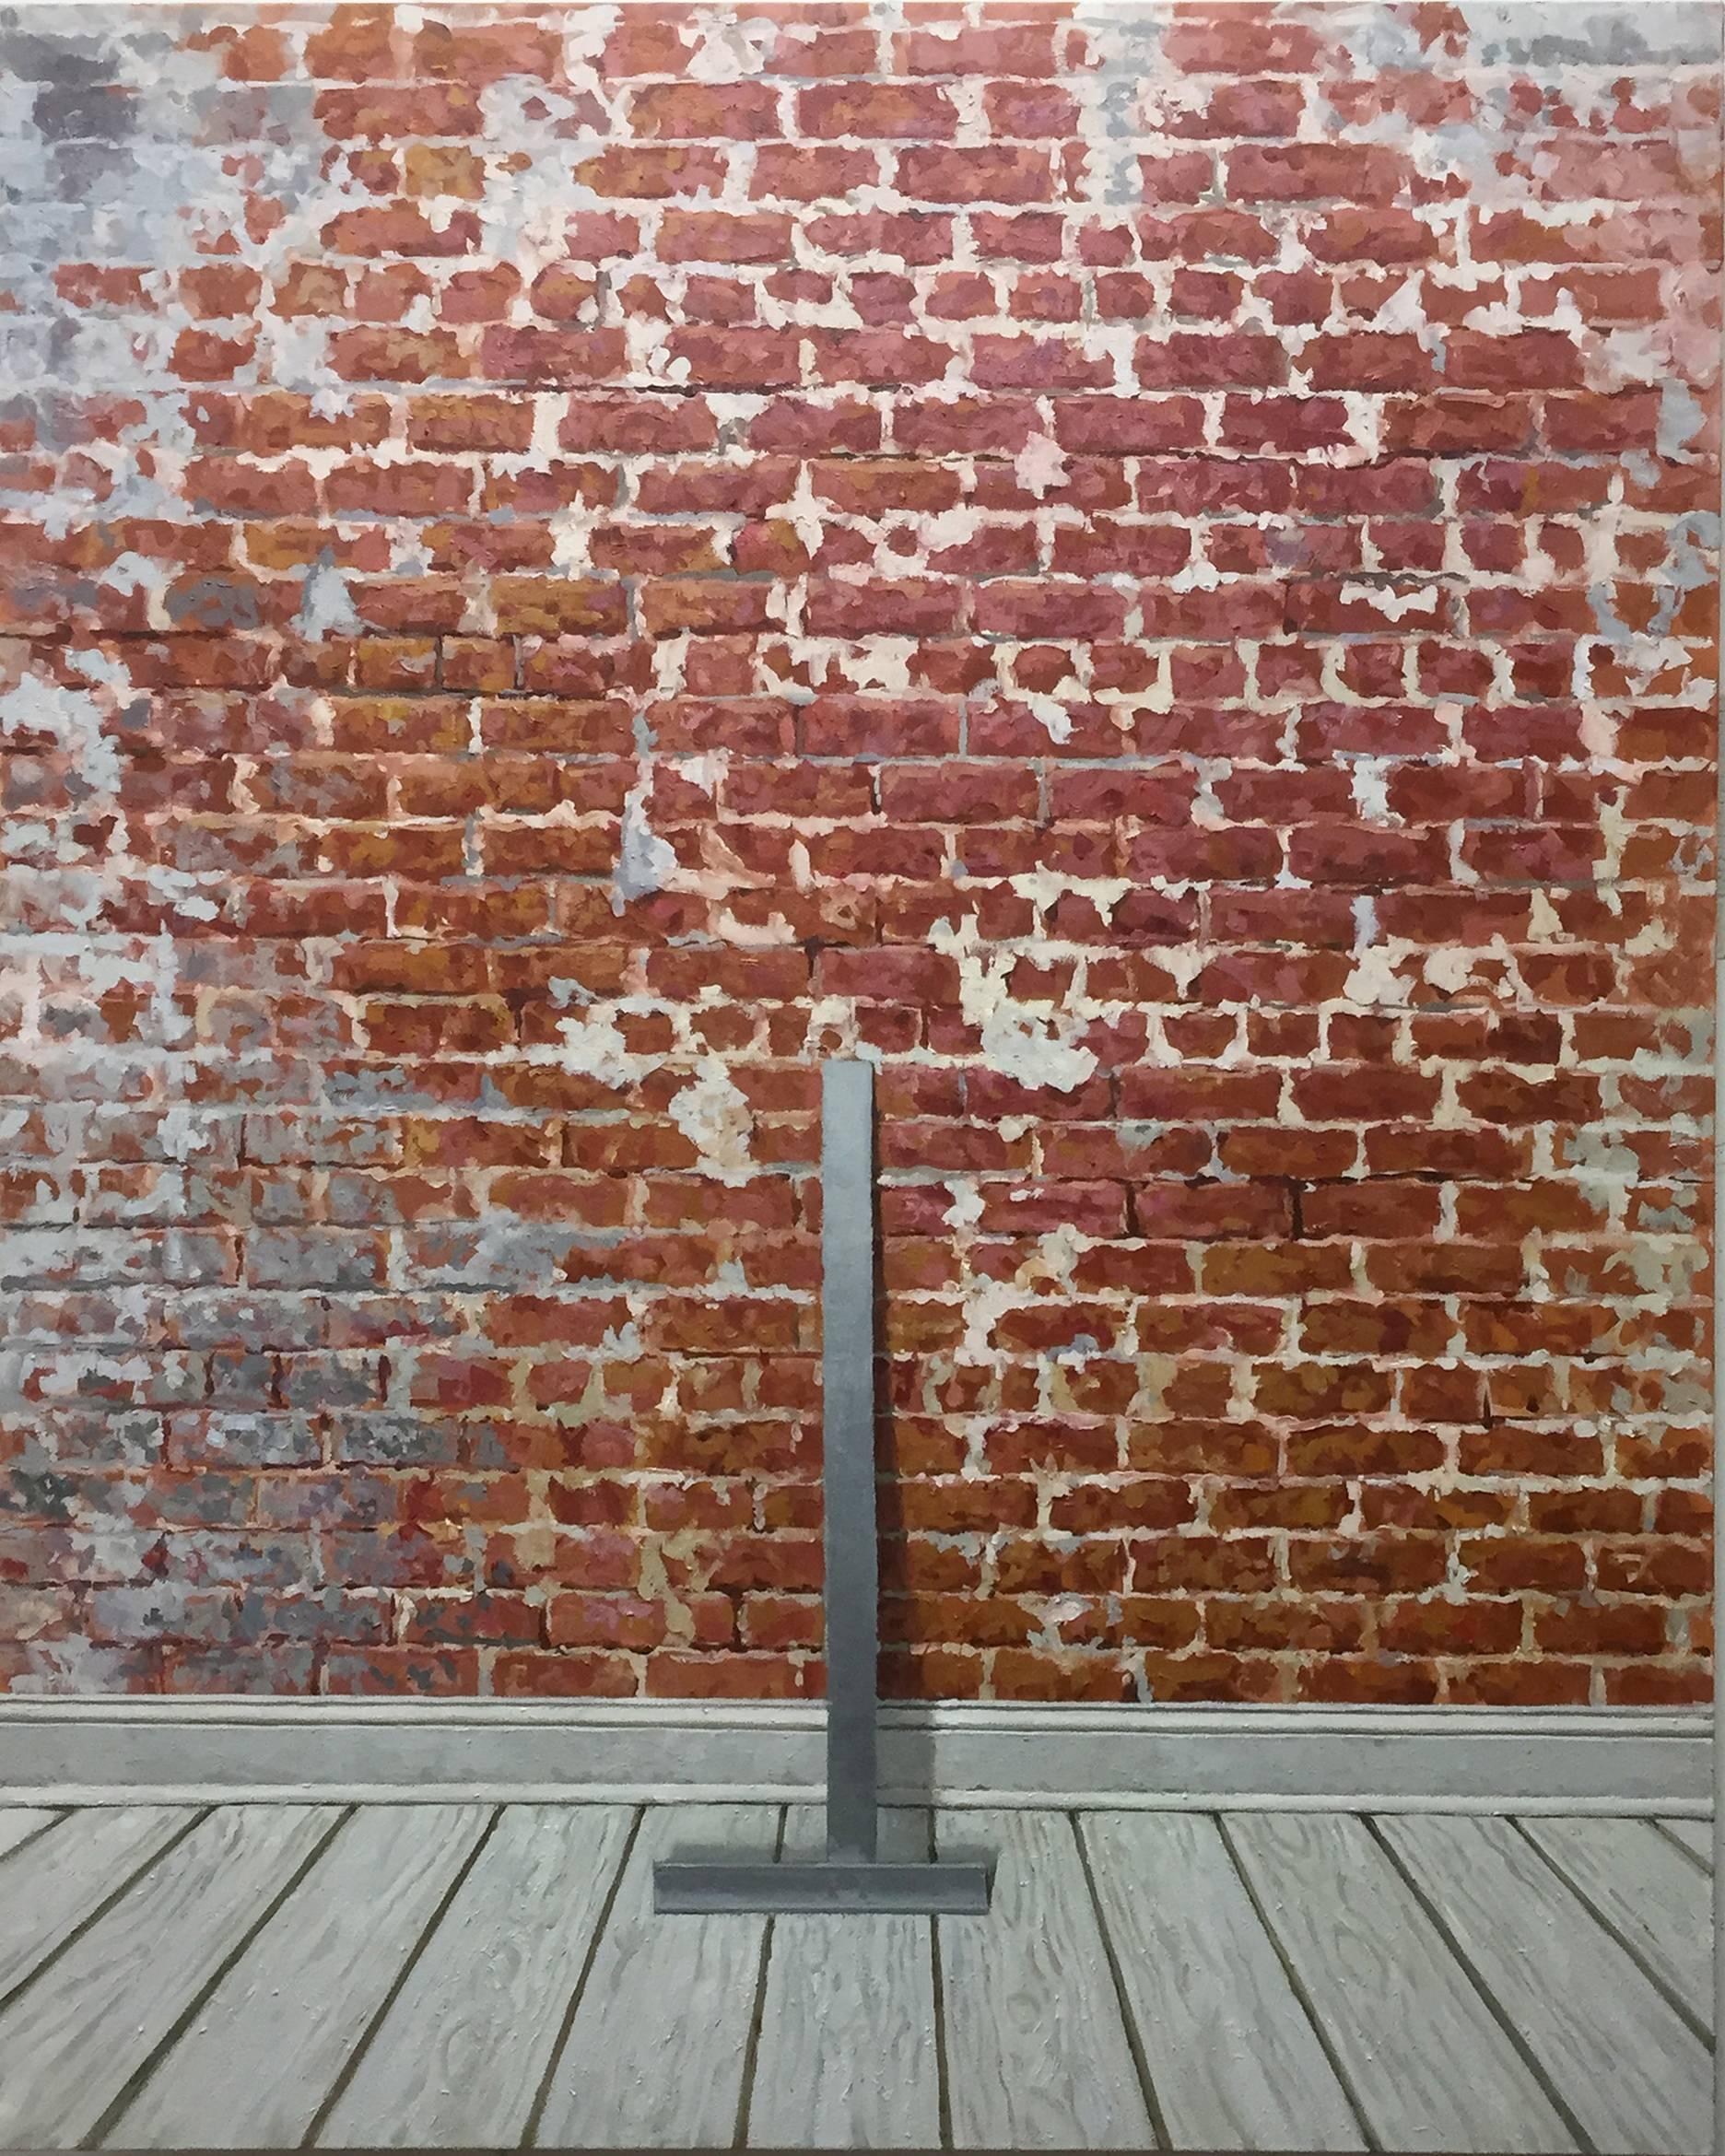 Interior Painting Richard Combes - POINT CENTRAL - Photorealism / Mur de briques rouges apparentes / Contraste